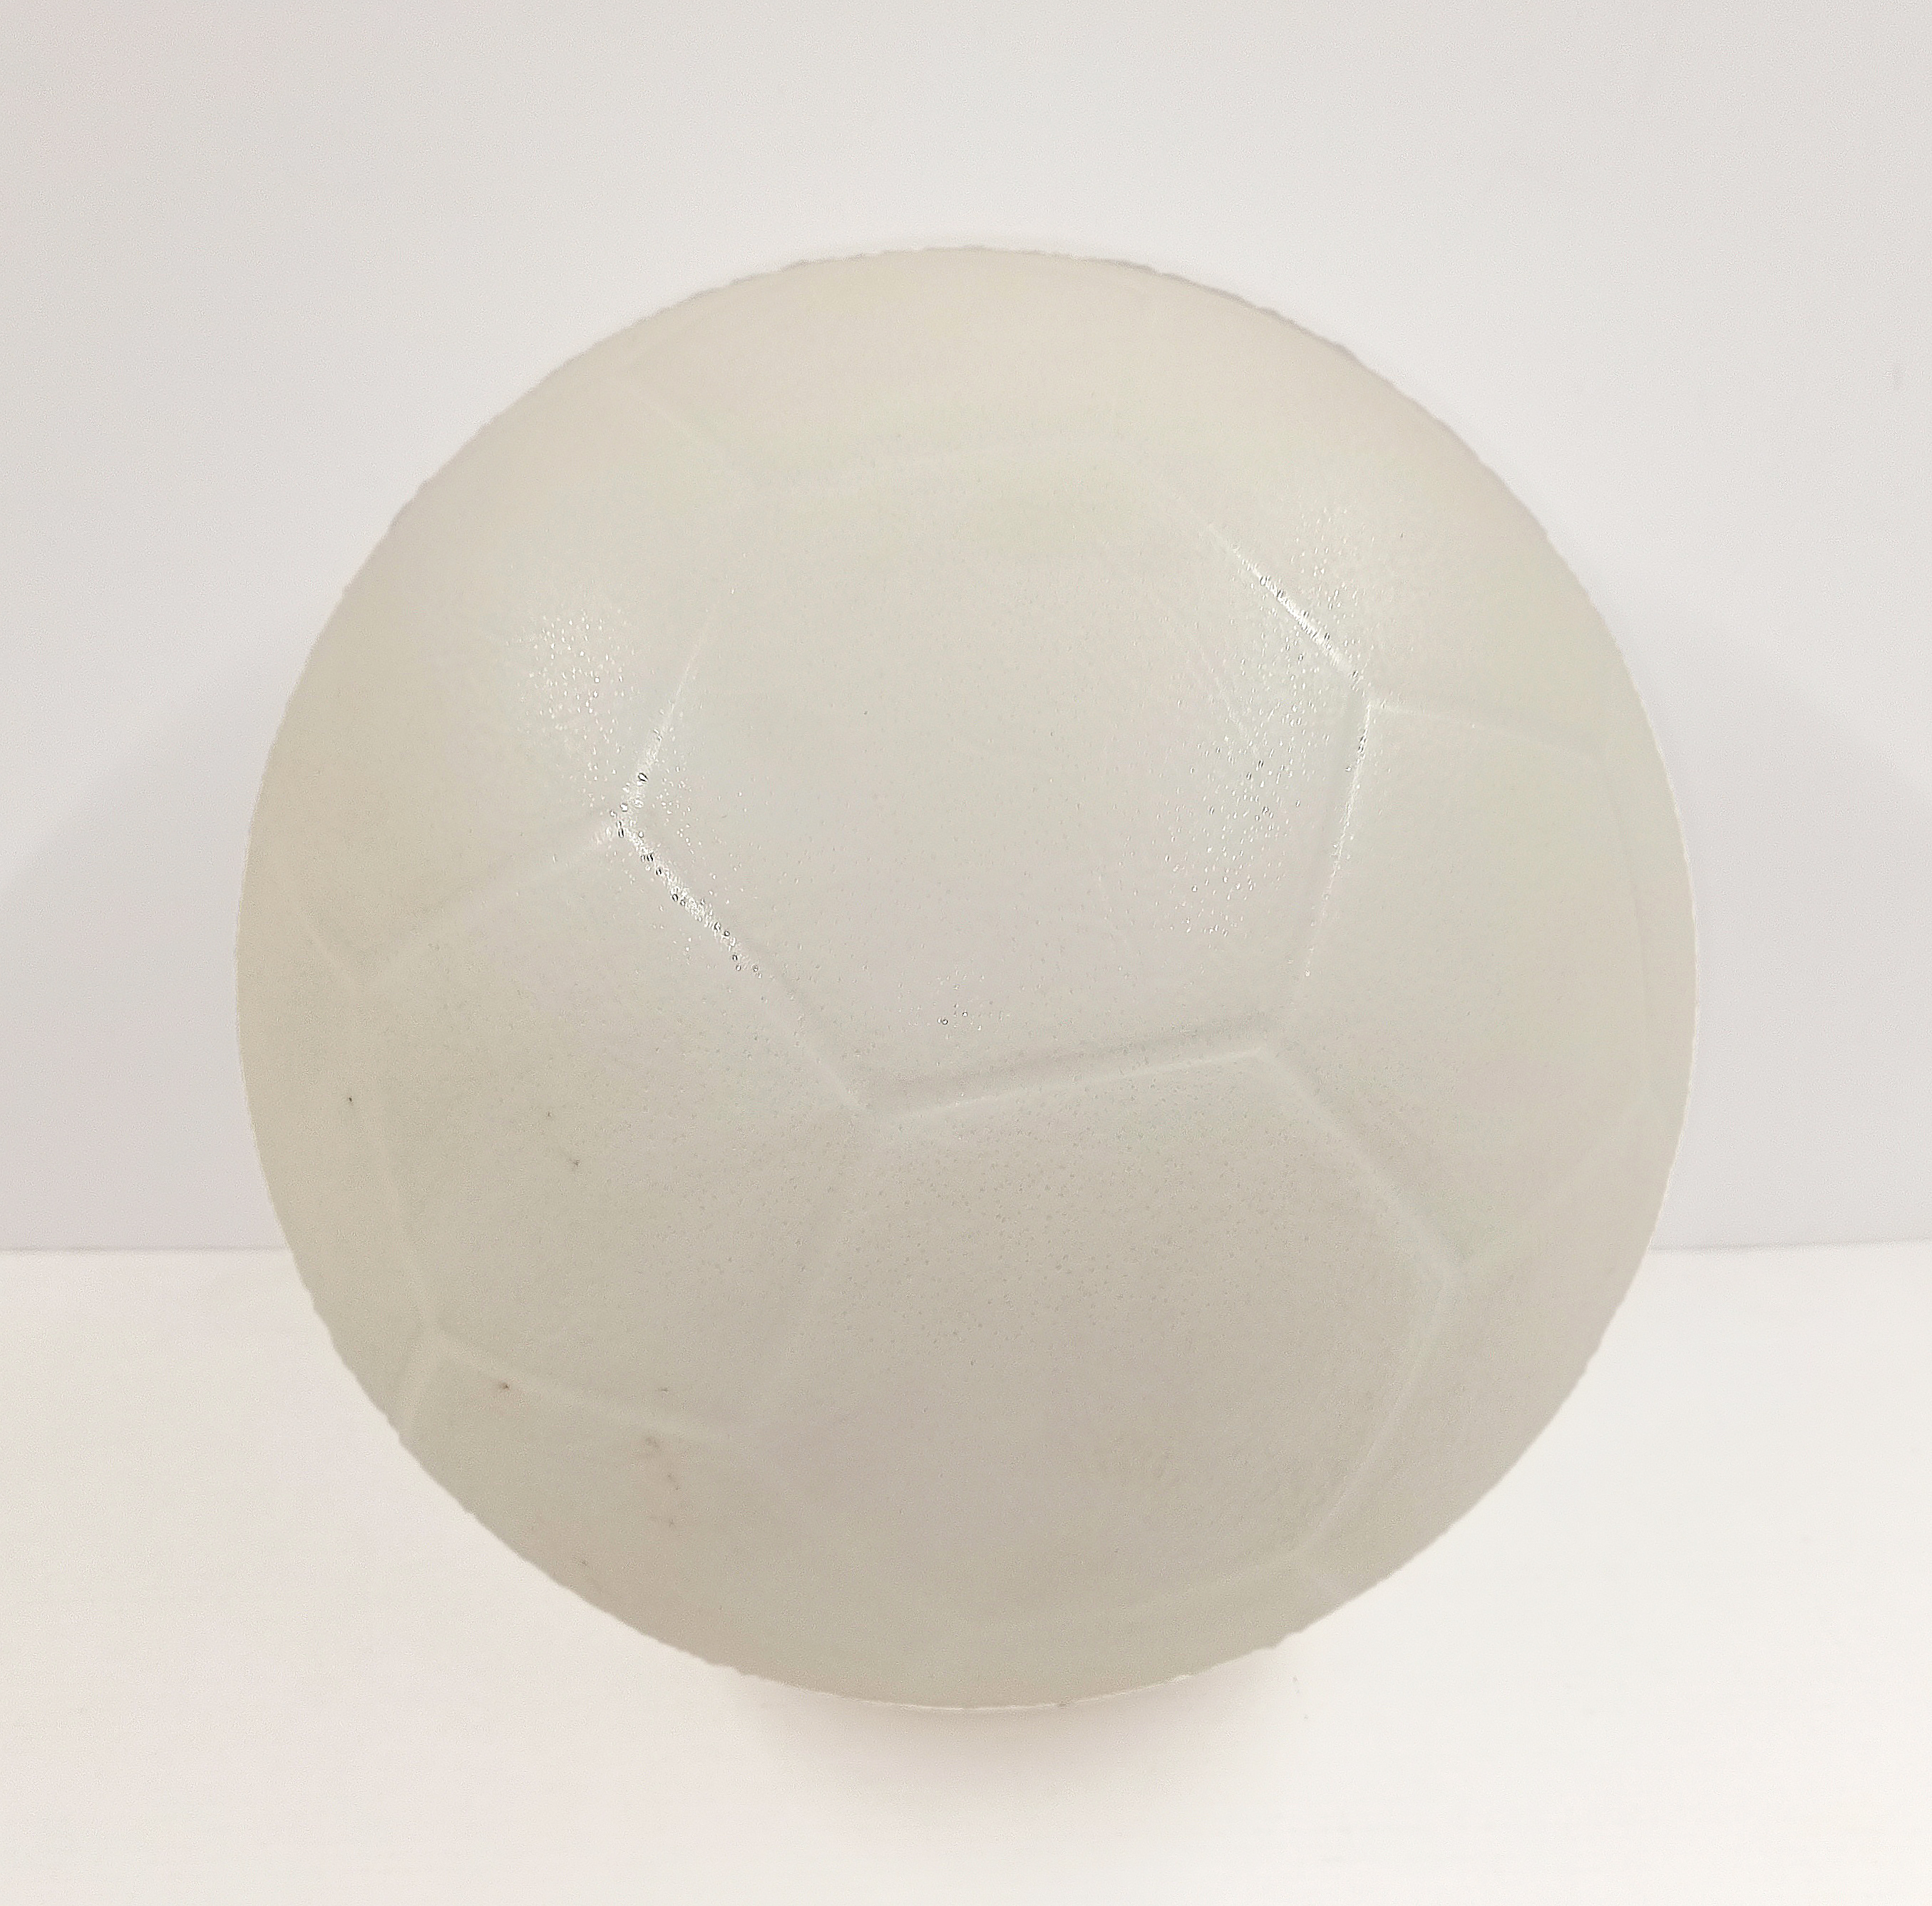 Óriás foci kidobó labda, fehér, 23 cm